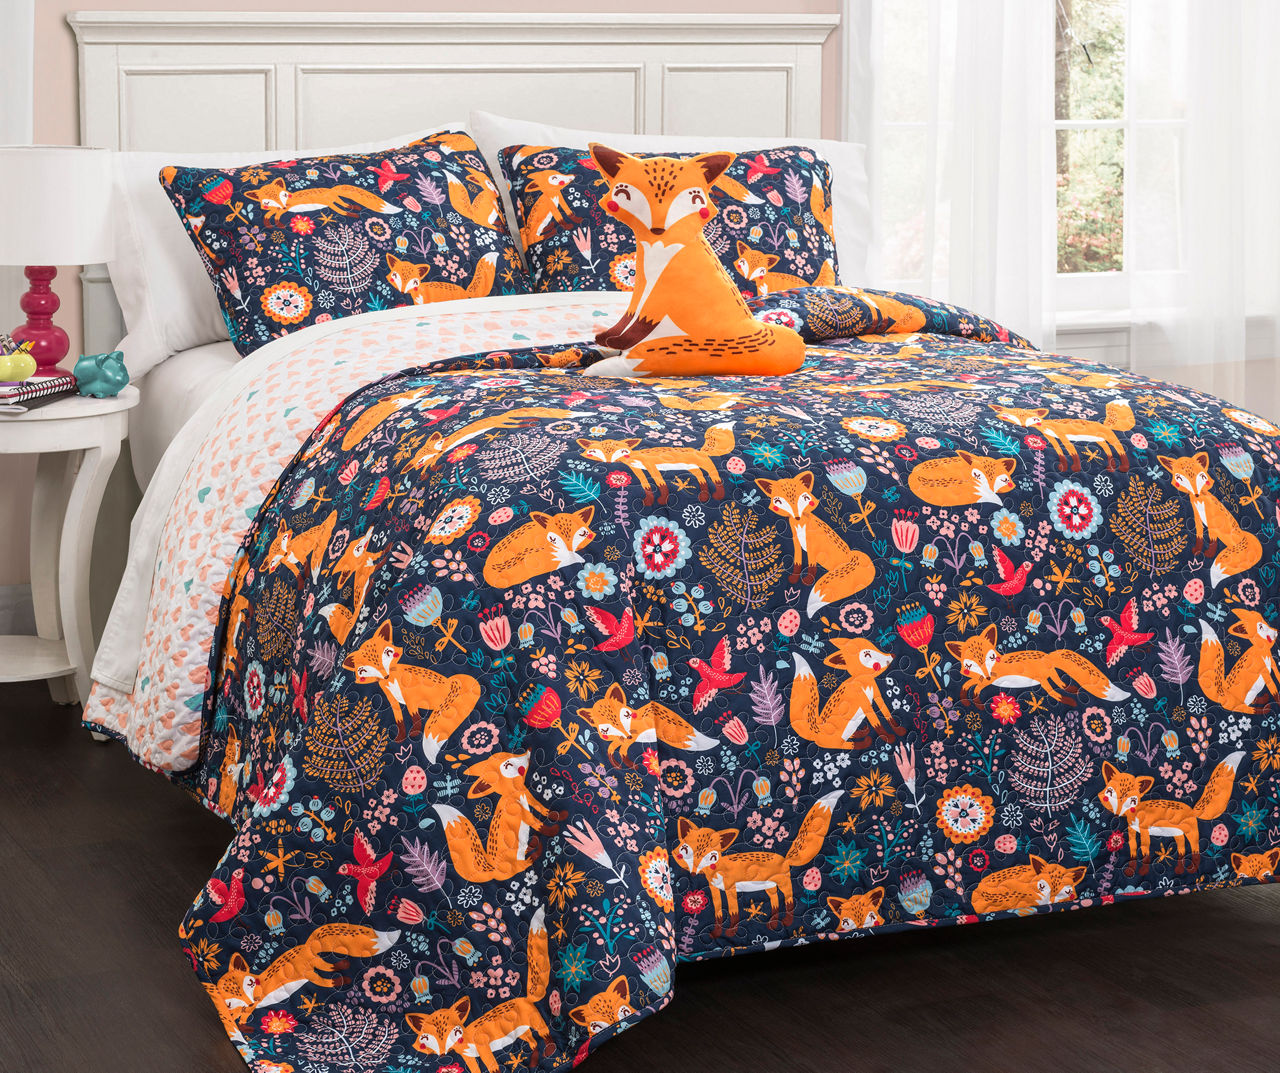 Pixie Fox Navy & Orange Floral Full/Queen 4-Piece Quilt Set